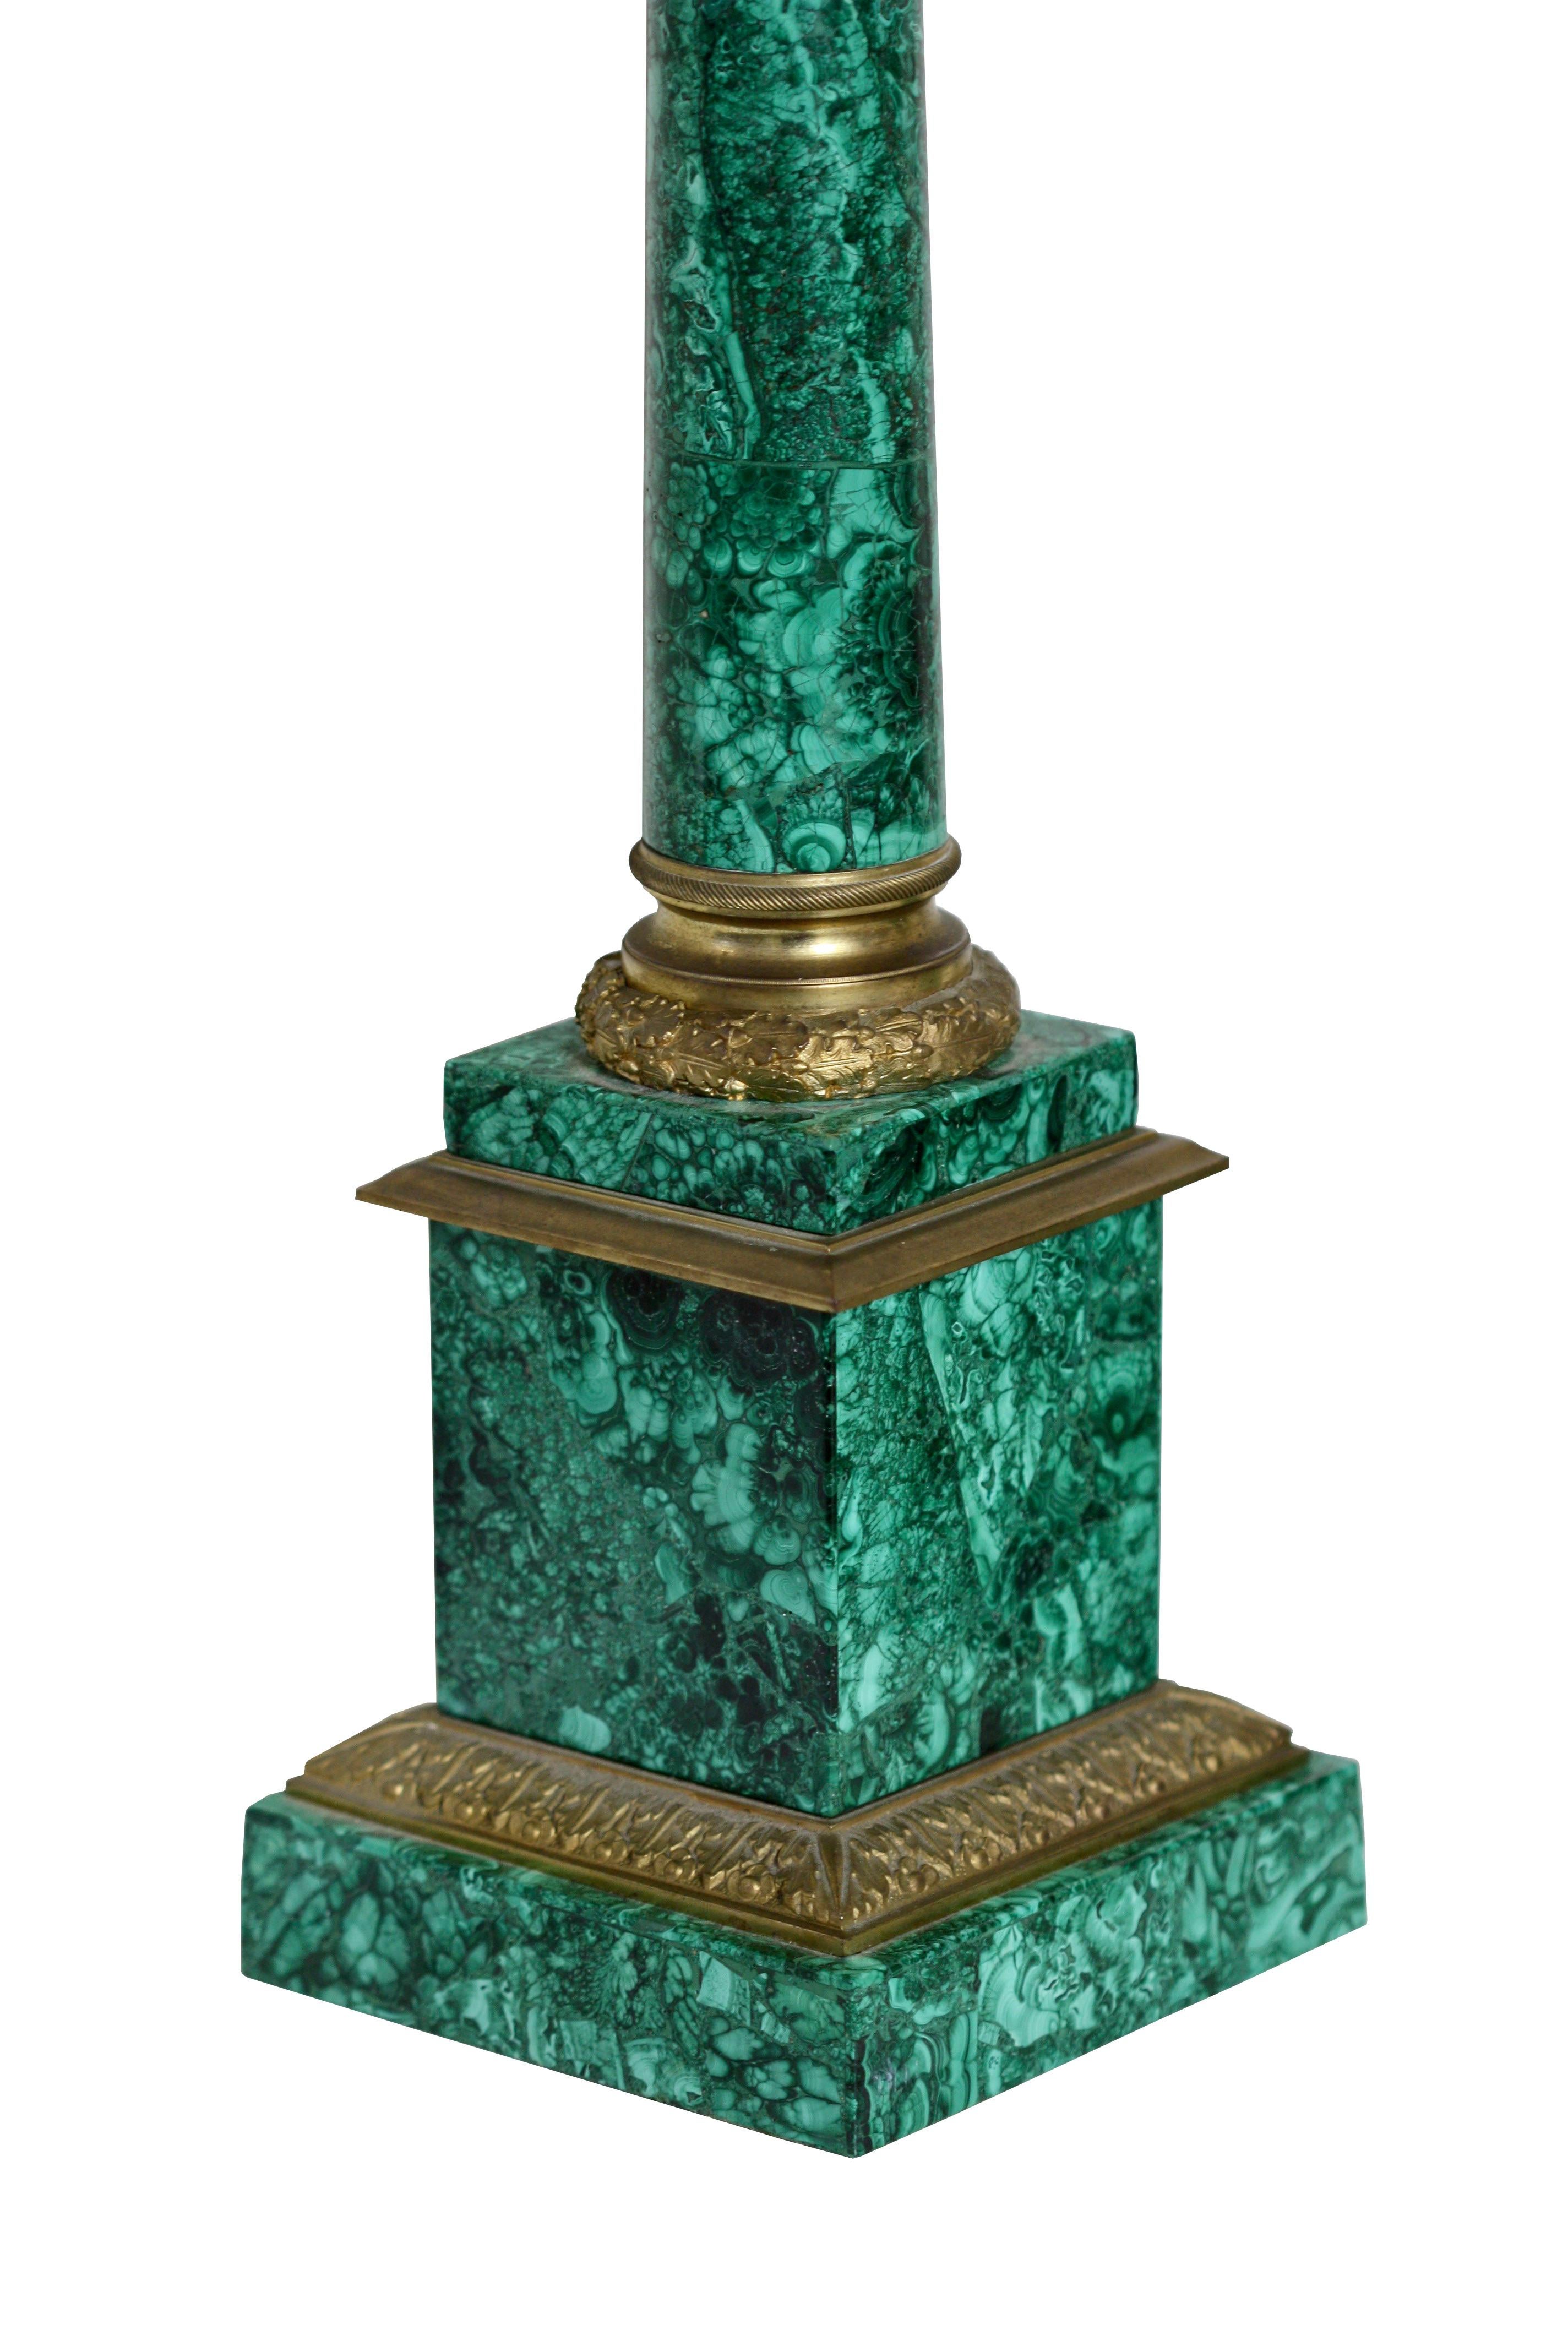 Ein Paar dreiflammige Kandelaber aus Malachit im russischen Stil, in Goldbronze gefasst
Viertes Quartal des 19. Jahrhunderts
runde Säulen auf einem quadratischen Sockel mit Bronzefüßen, die drei S-förmige Äste aufweisen
Höhe 2ft. 3.12 in. (68,89